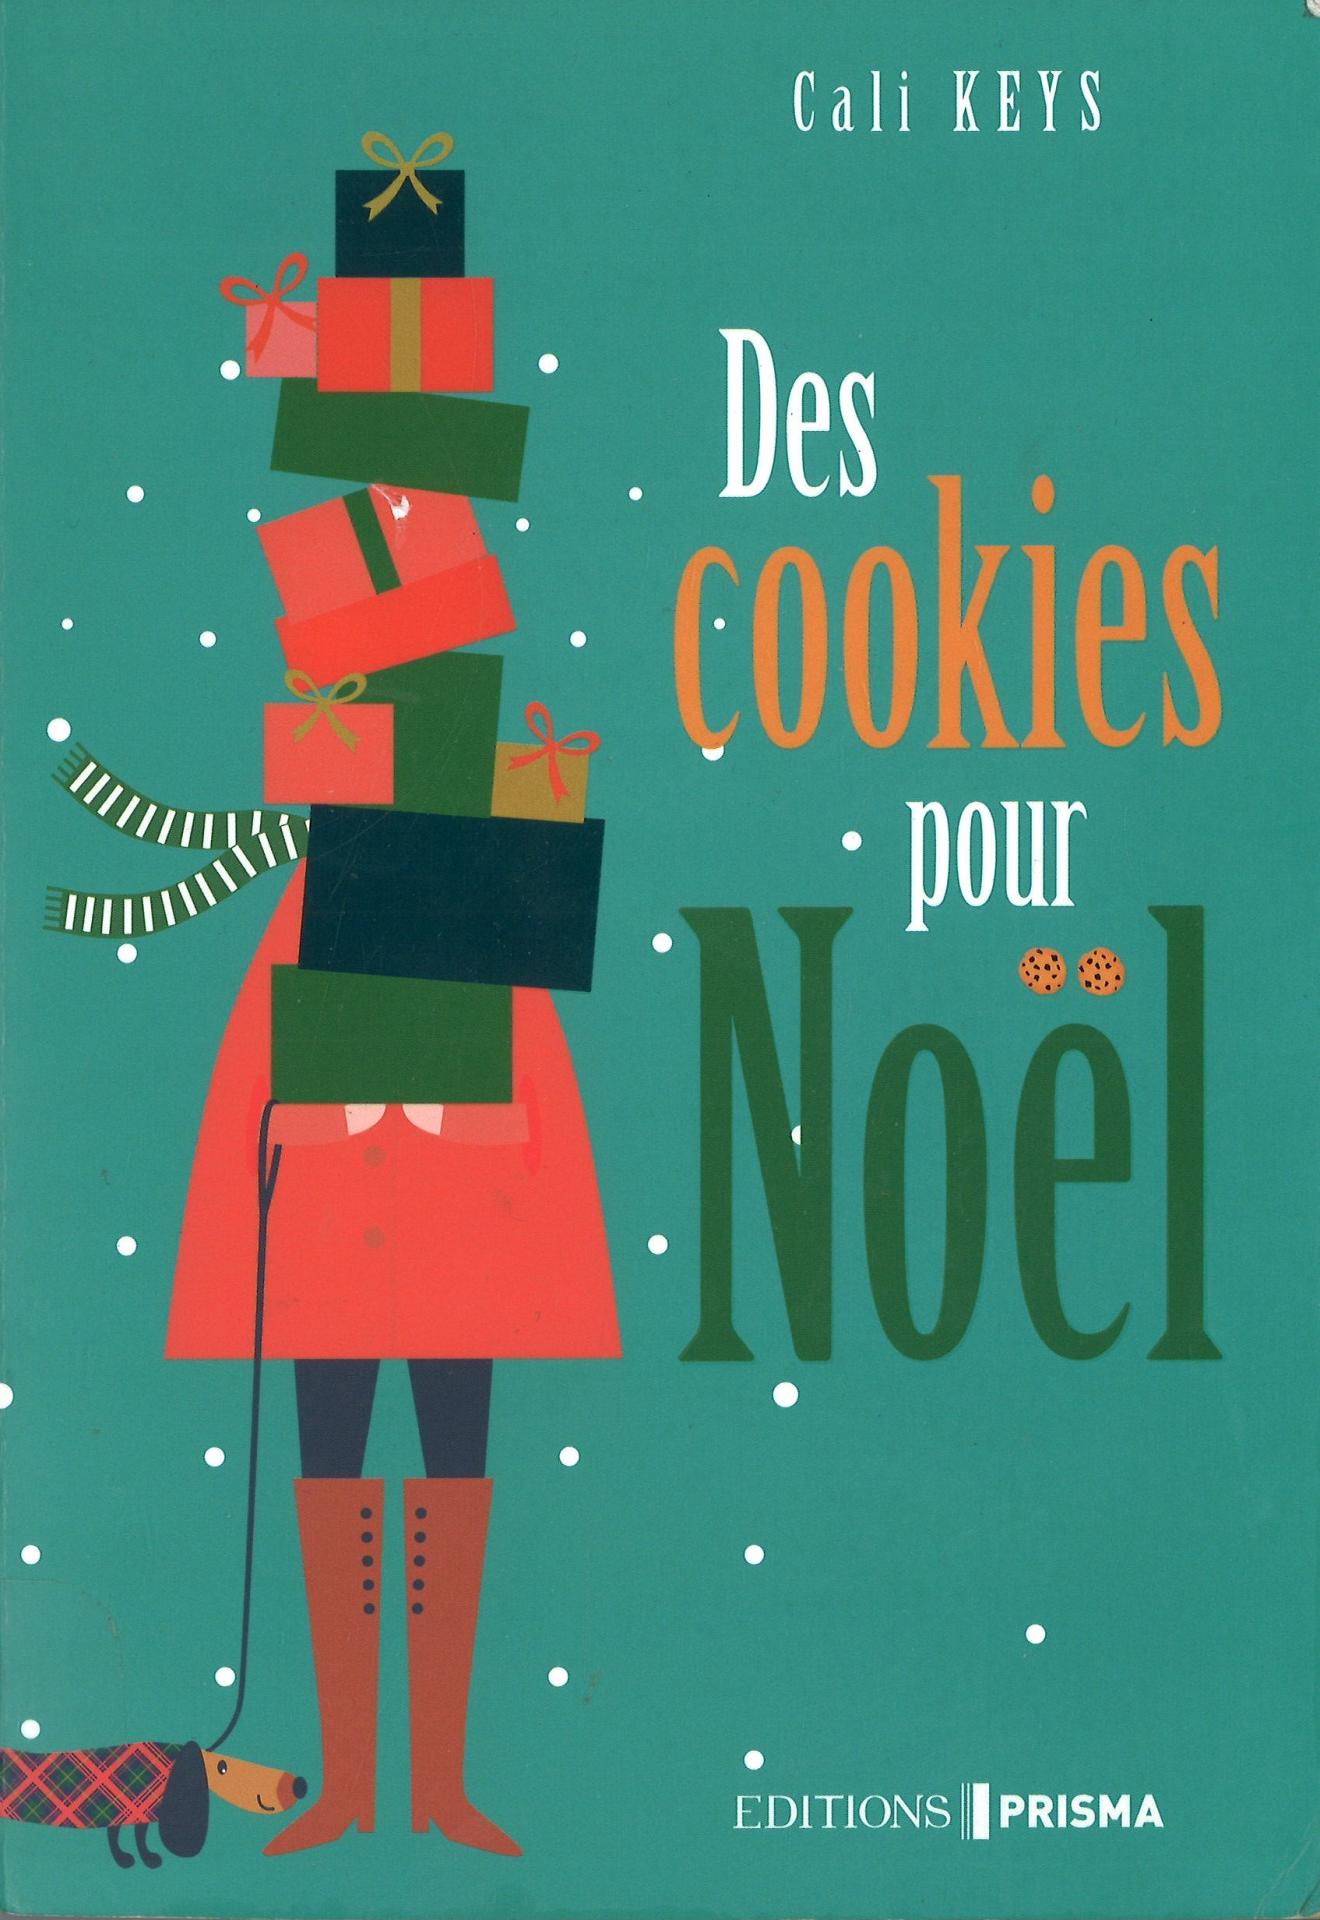 Des cookies pour noel